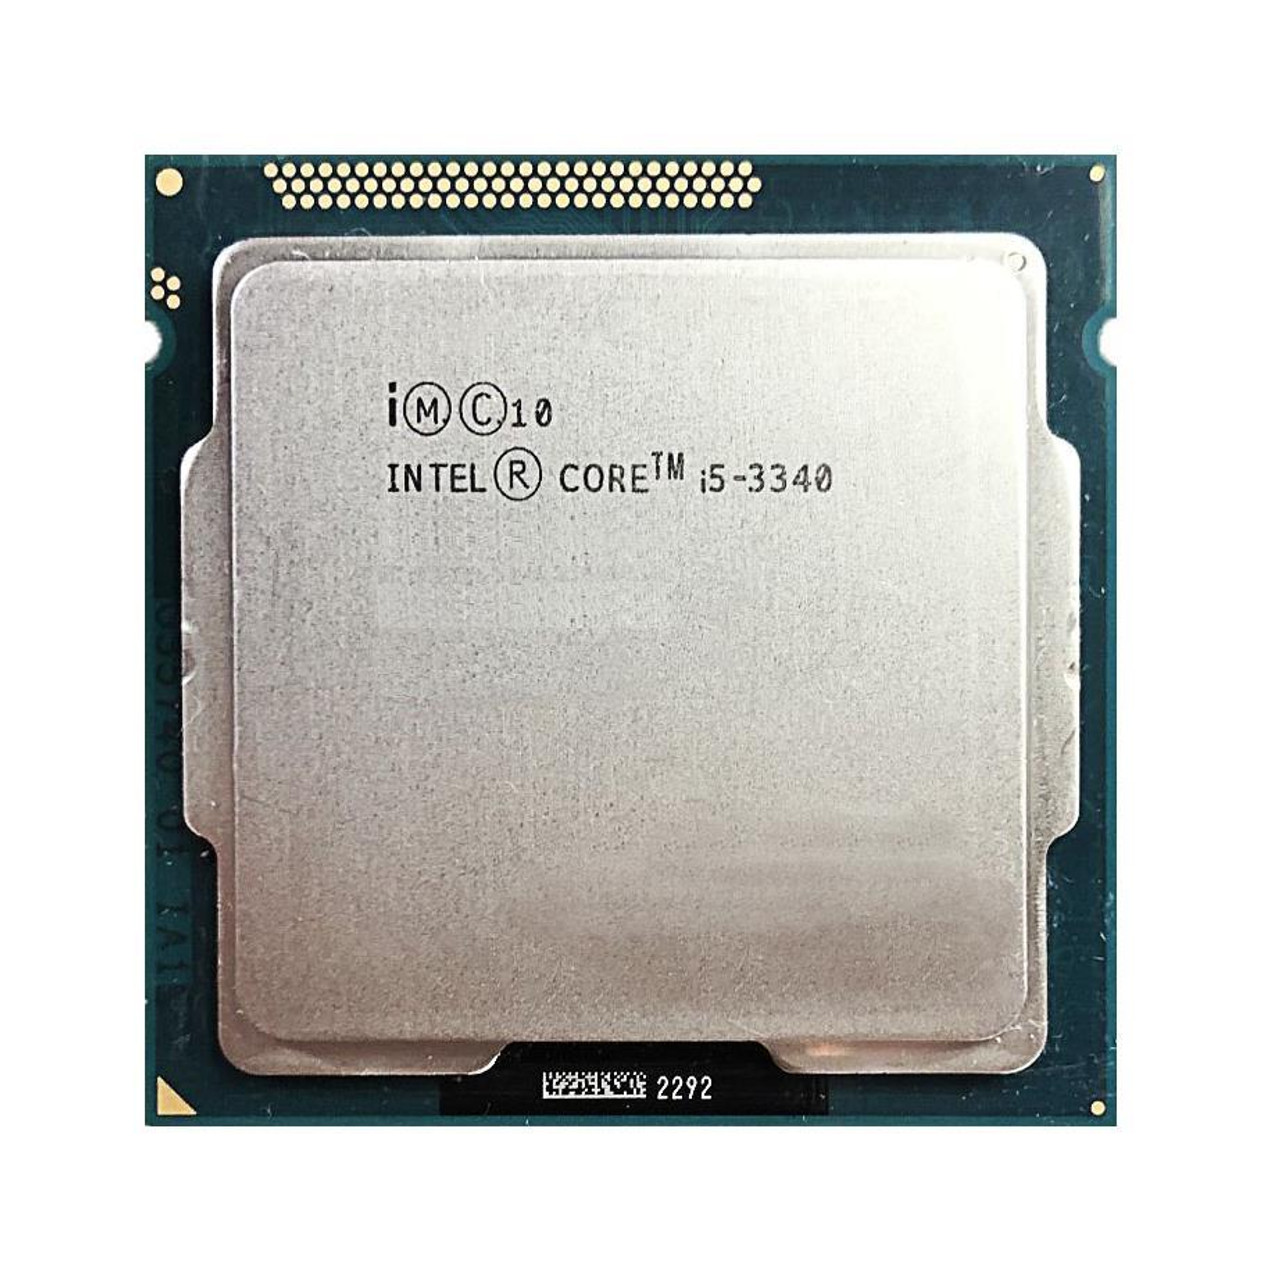 Dell 3.10GHz 5.00GT/s DMI 6MB L3 Cache Intel Core i5-3340 Quad-Core Processor Upgrade